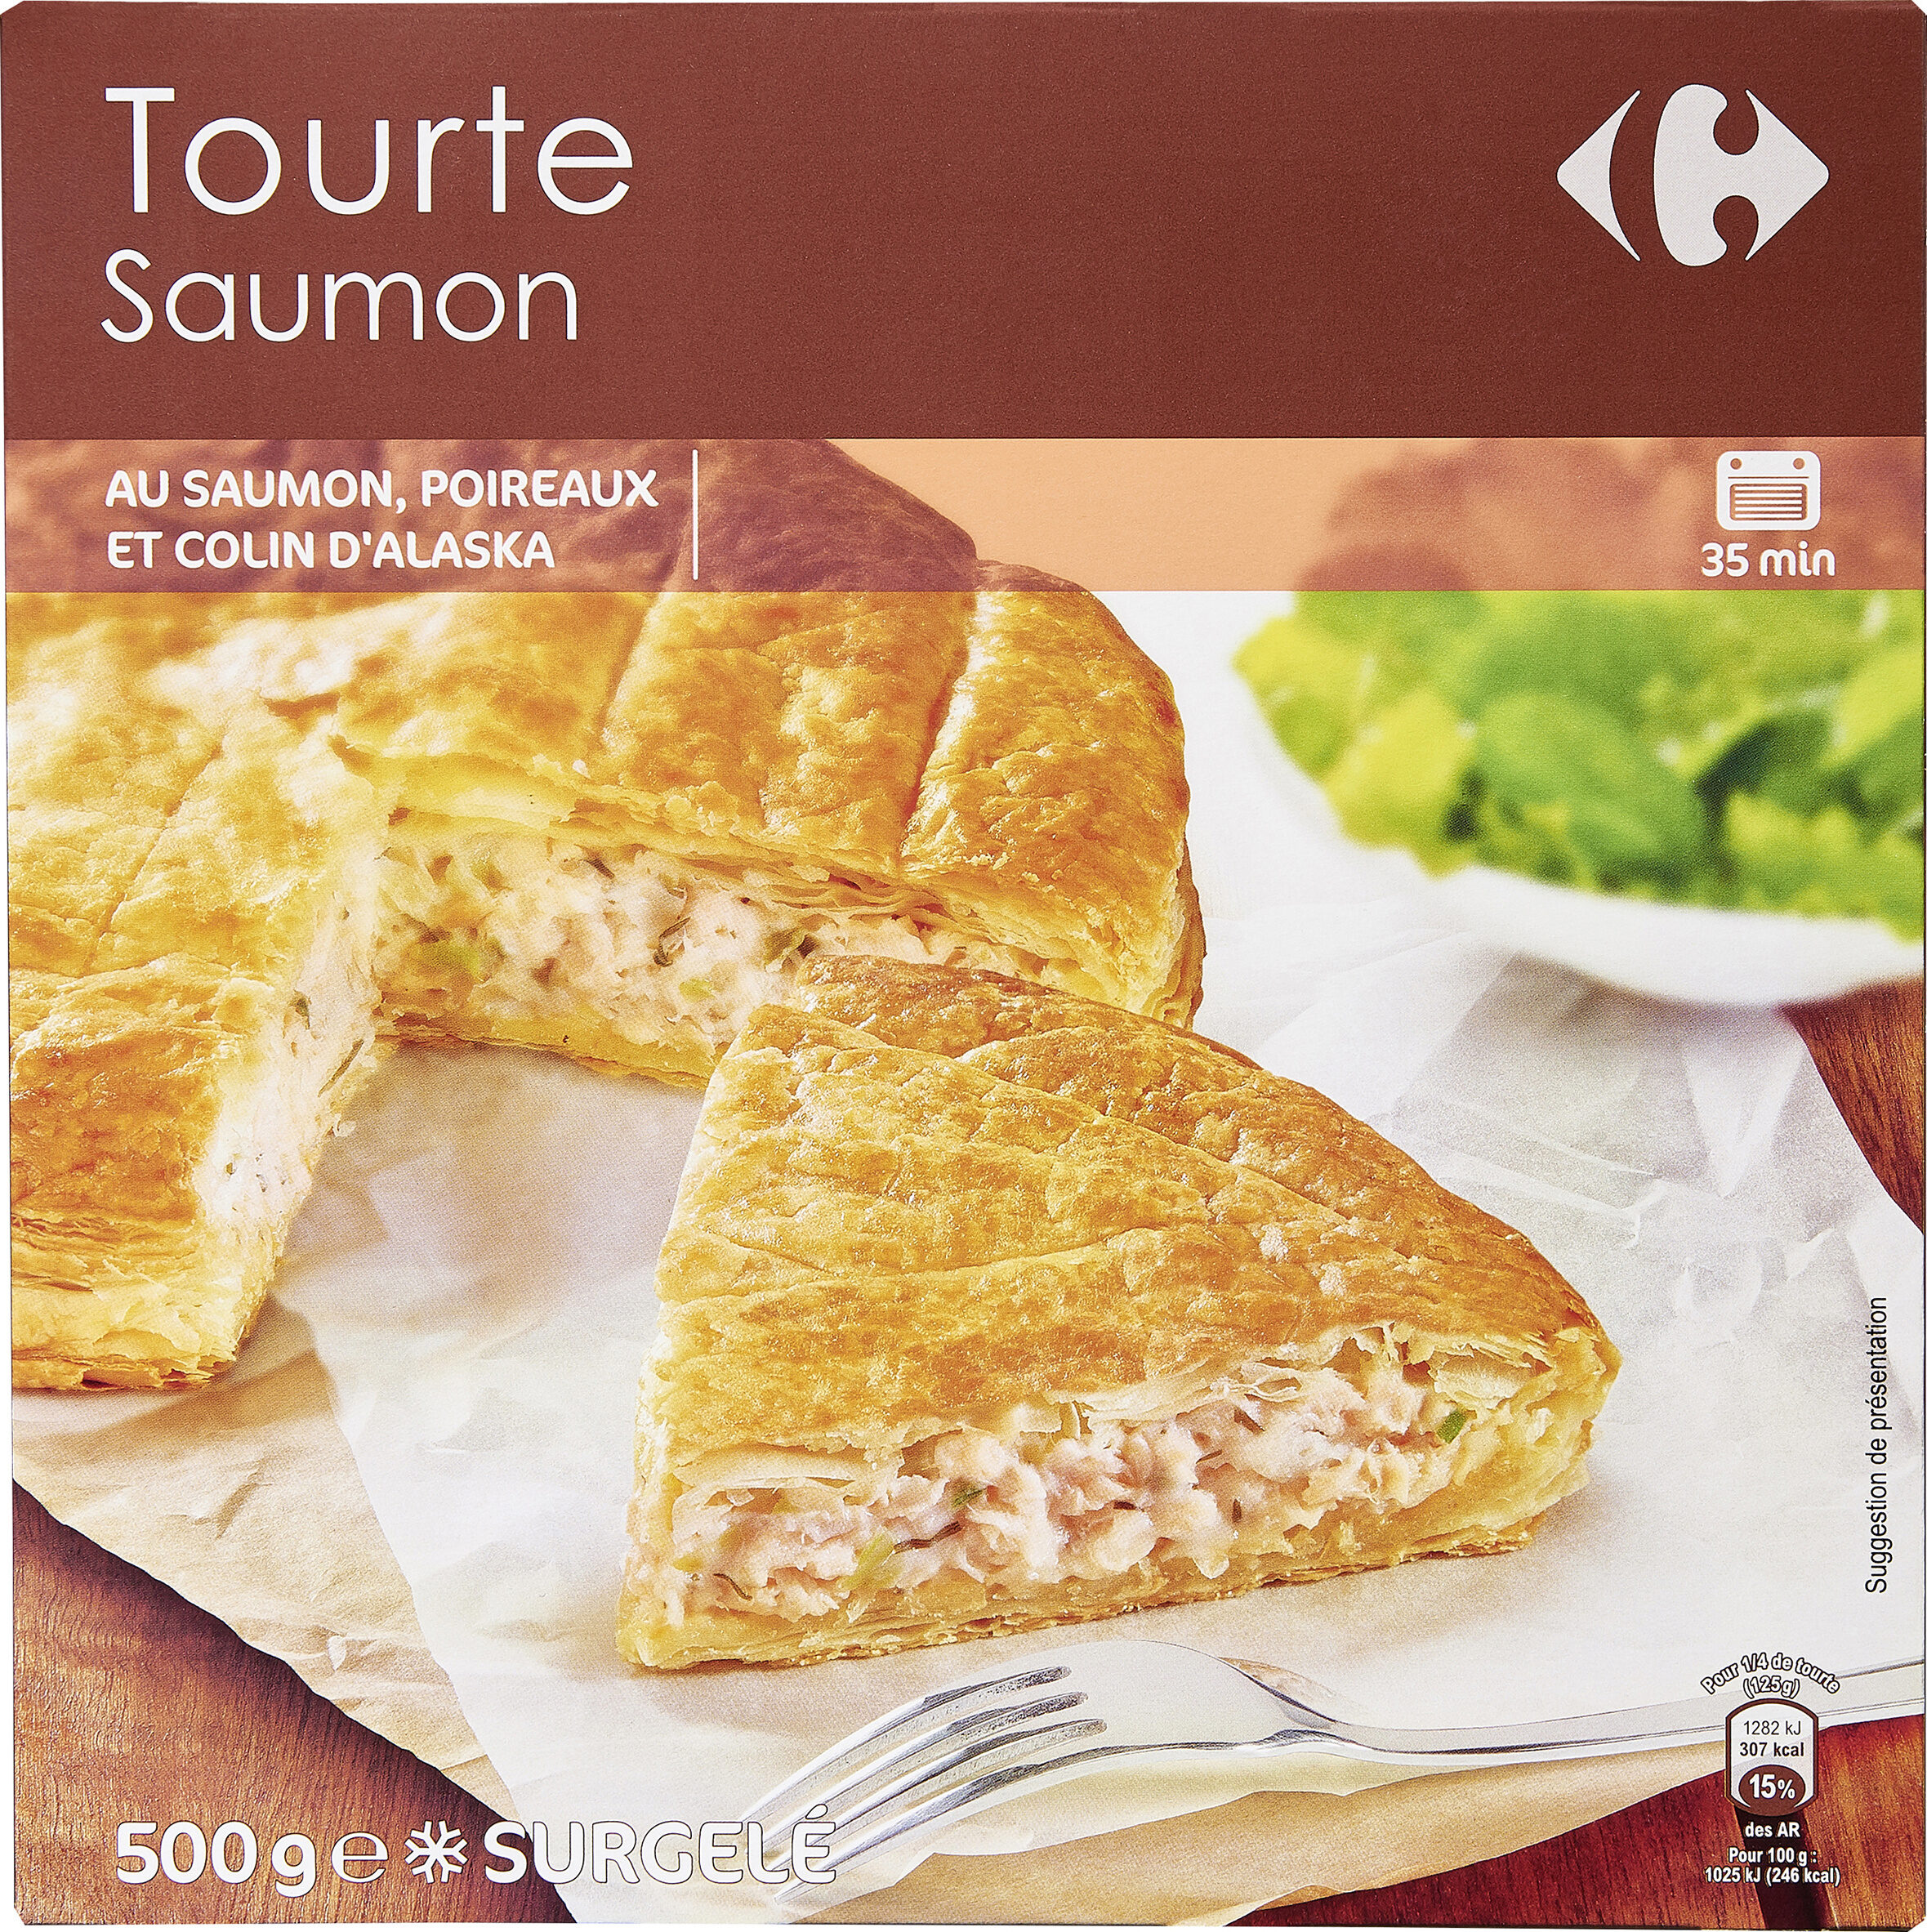 Tourte Saumon poireaux - Product - fr